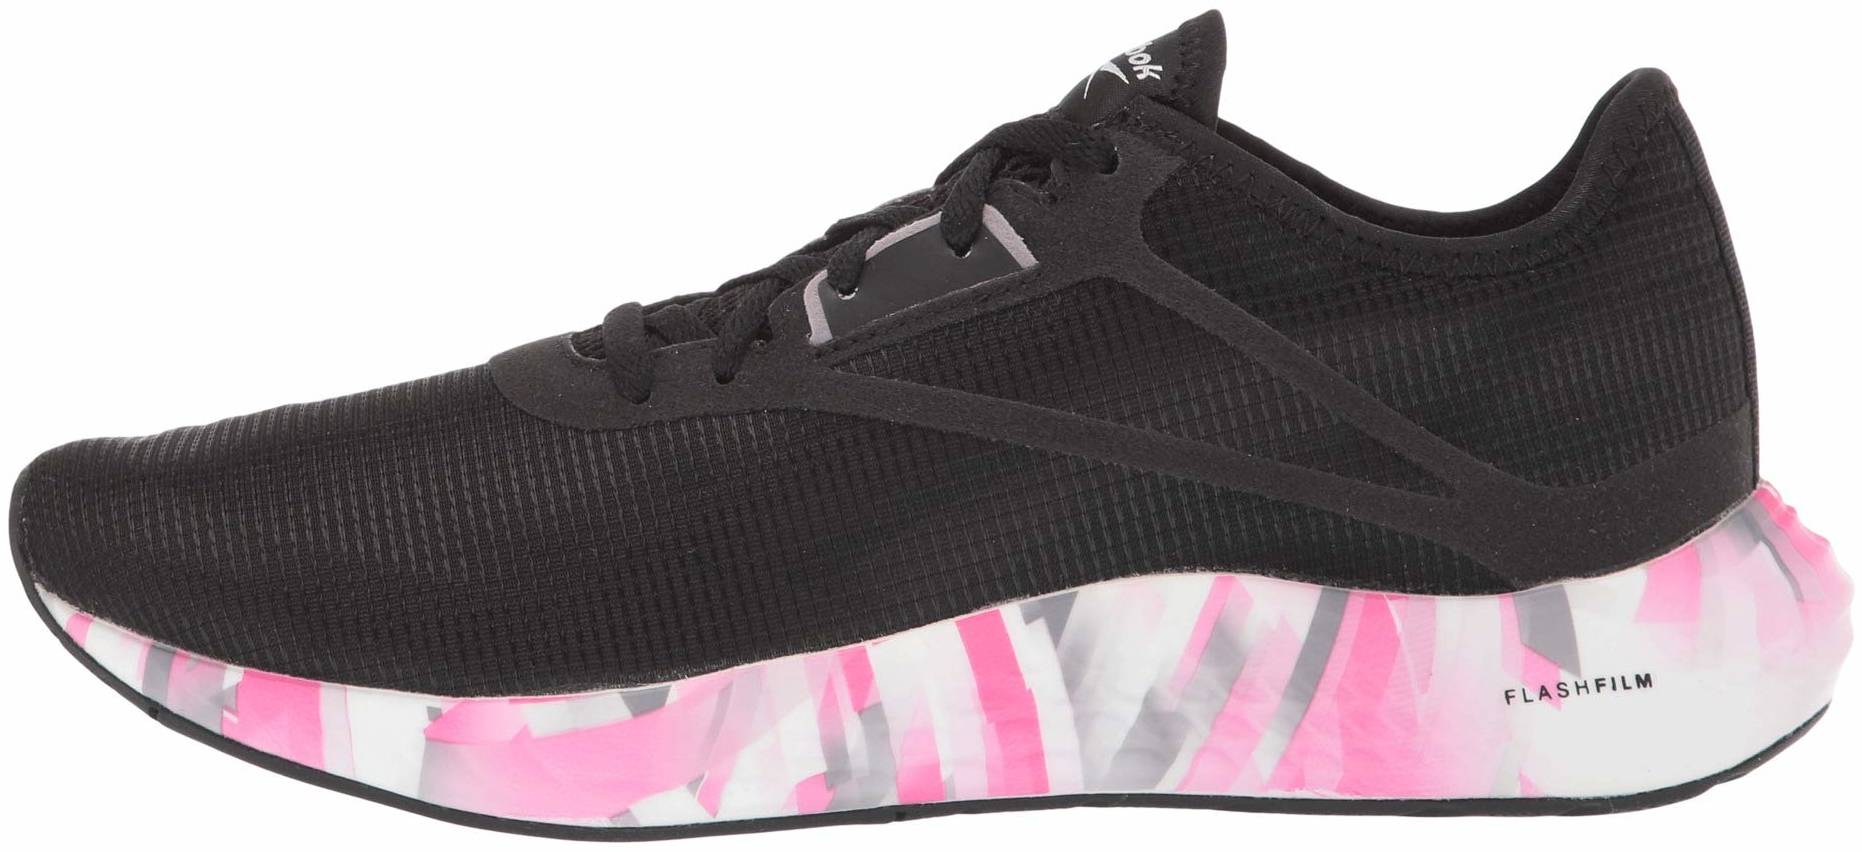 reebok pink running shoes